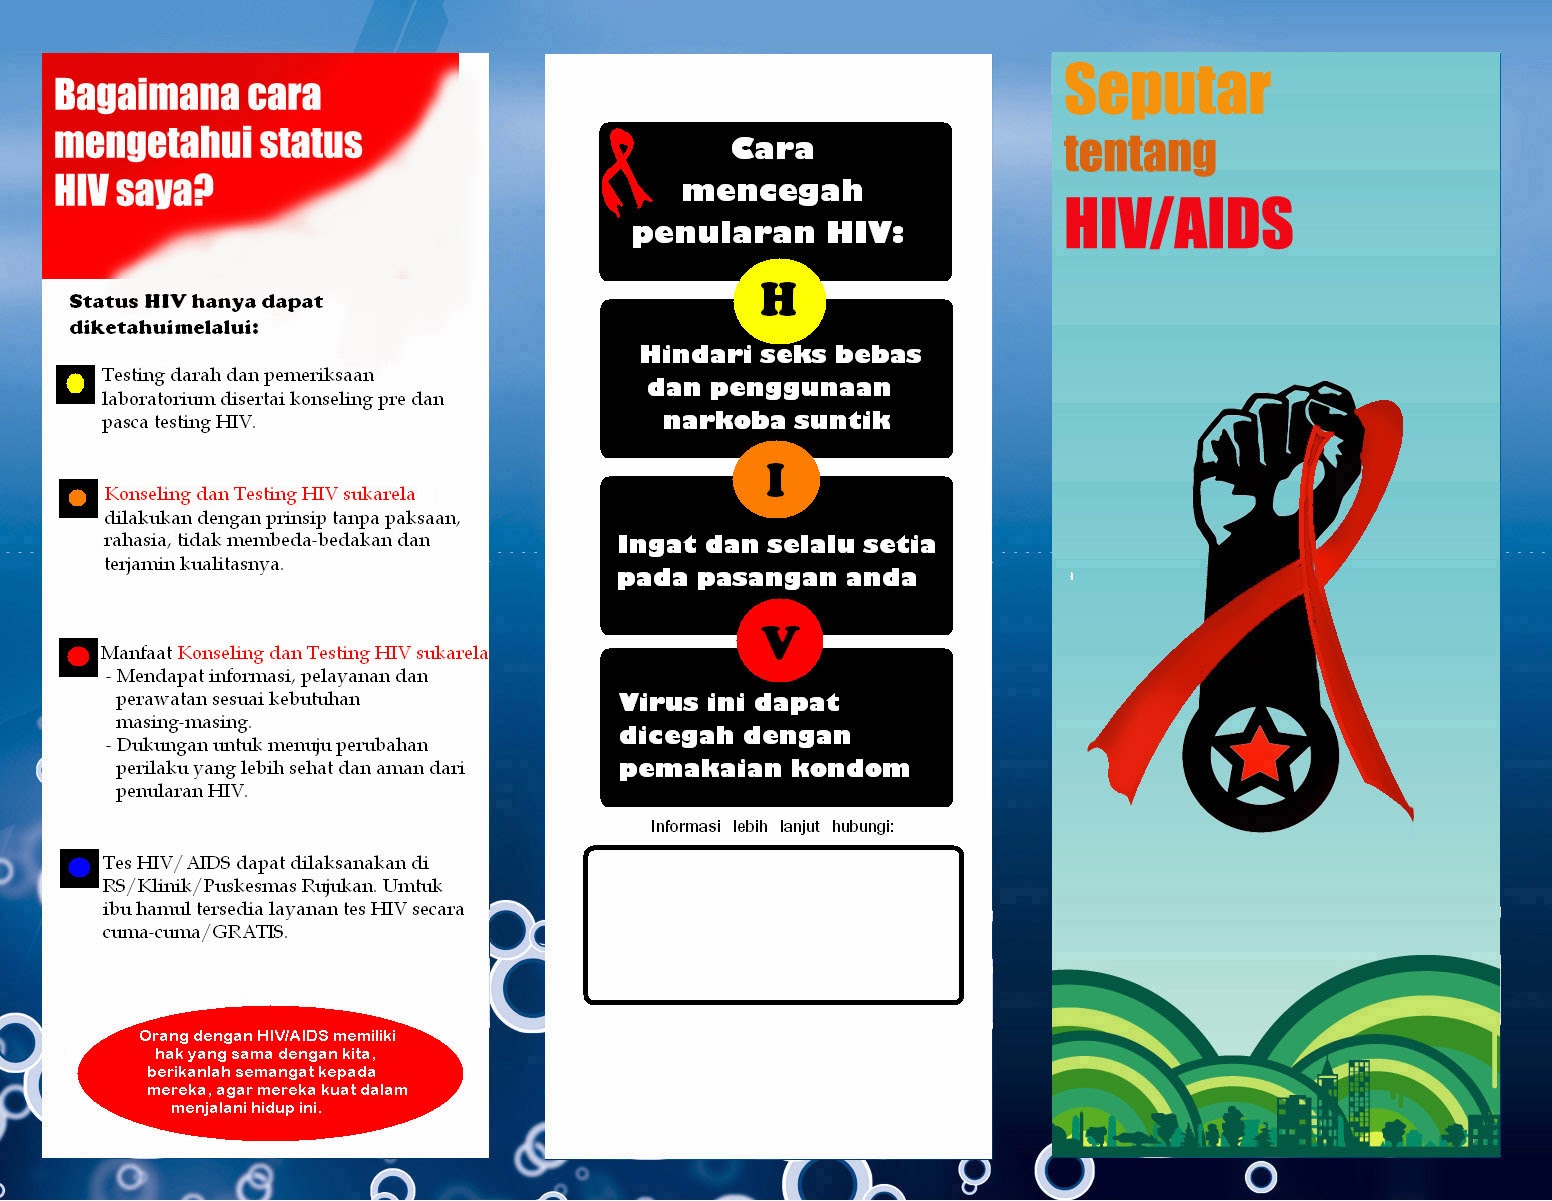 Desain Brosur HIV-AIDS - Hiv Aids Brochure Design